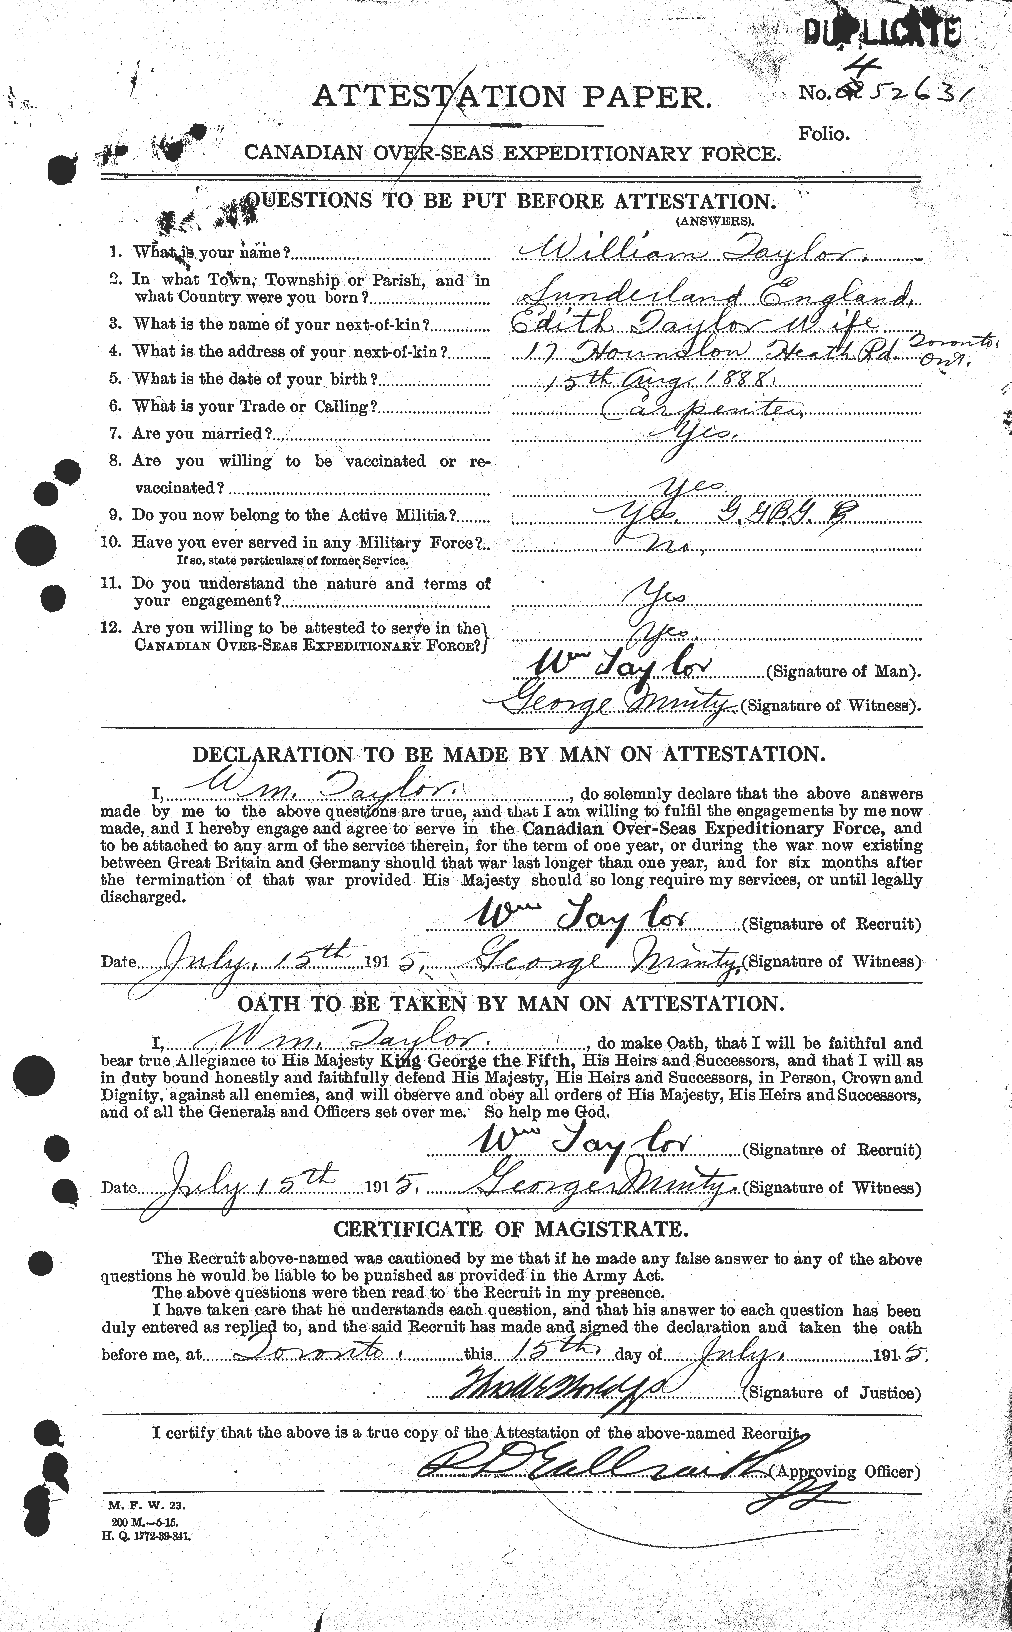 Dossiers du Personnel de la Première Guerre mondiale - CEC 628100a